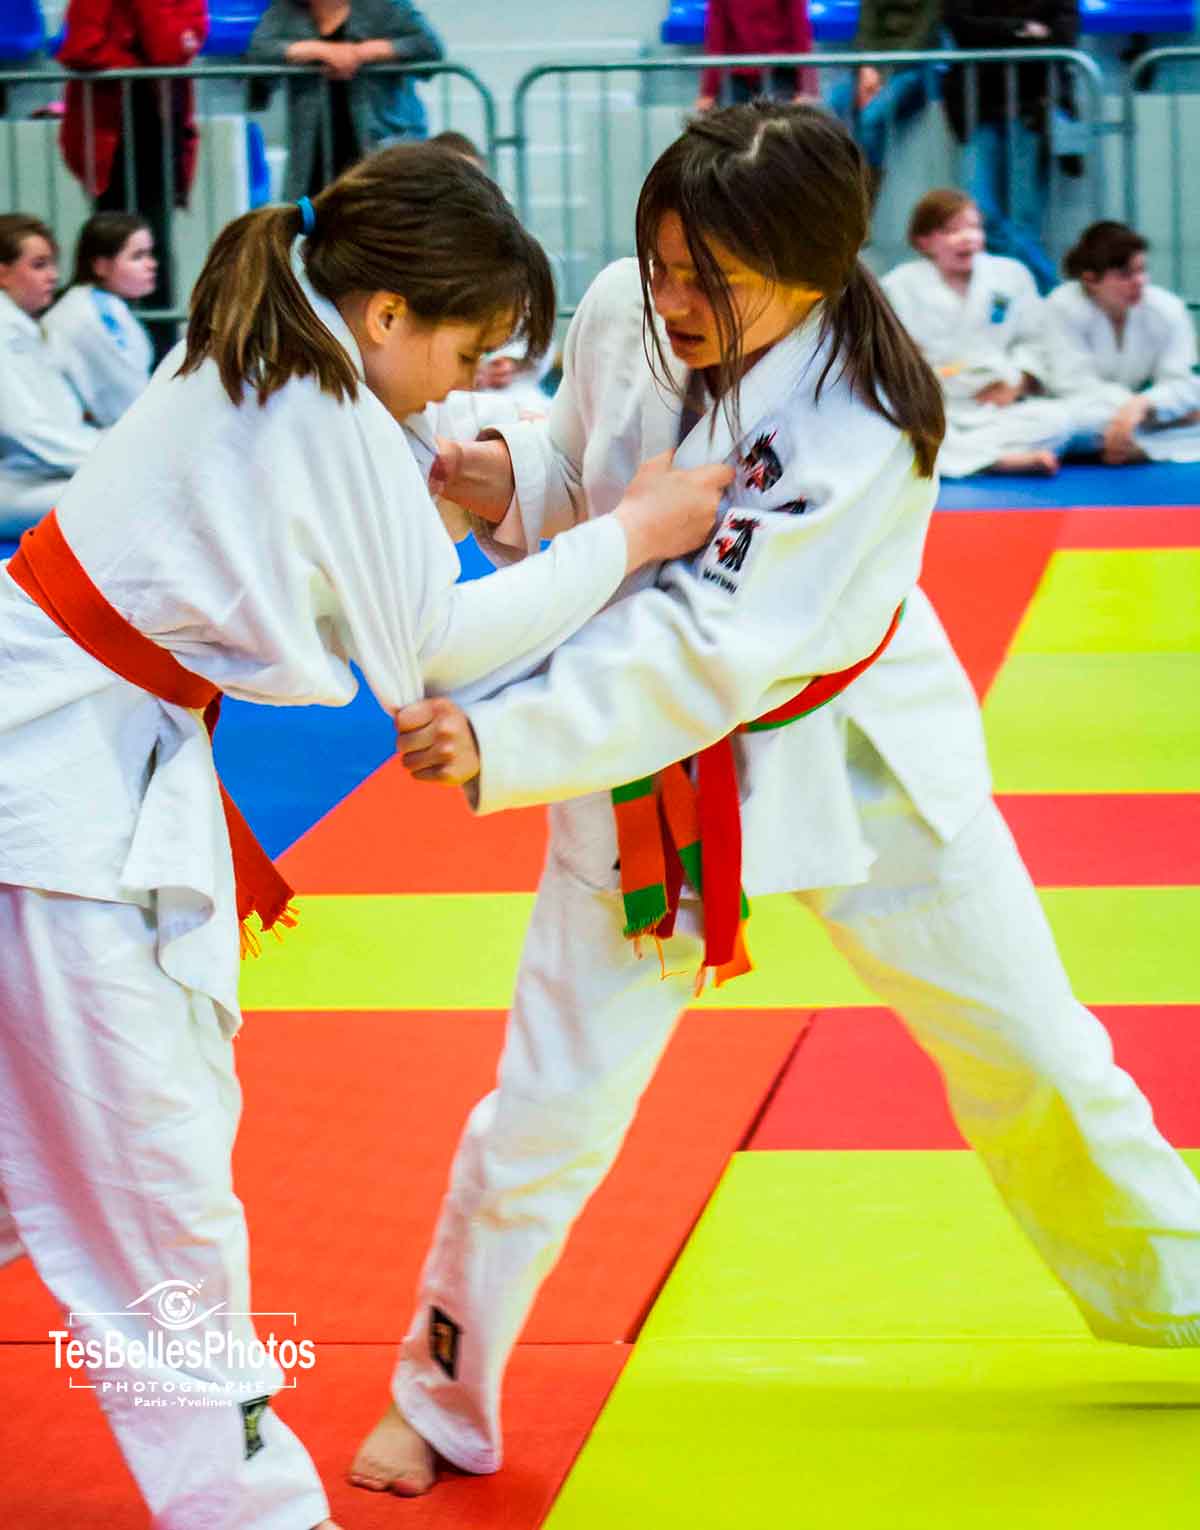 Photographe judo Essonne, reportage photos de judo en Essonne